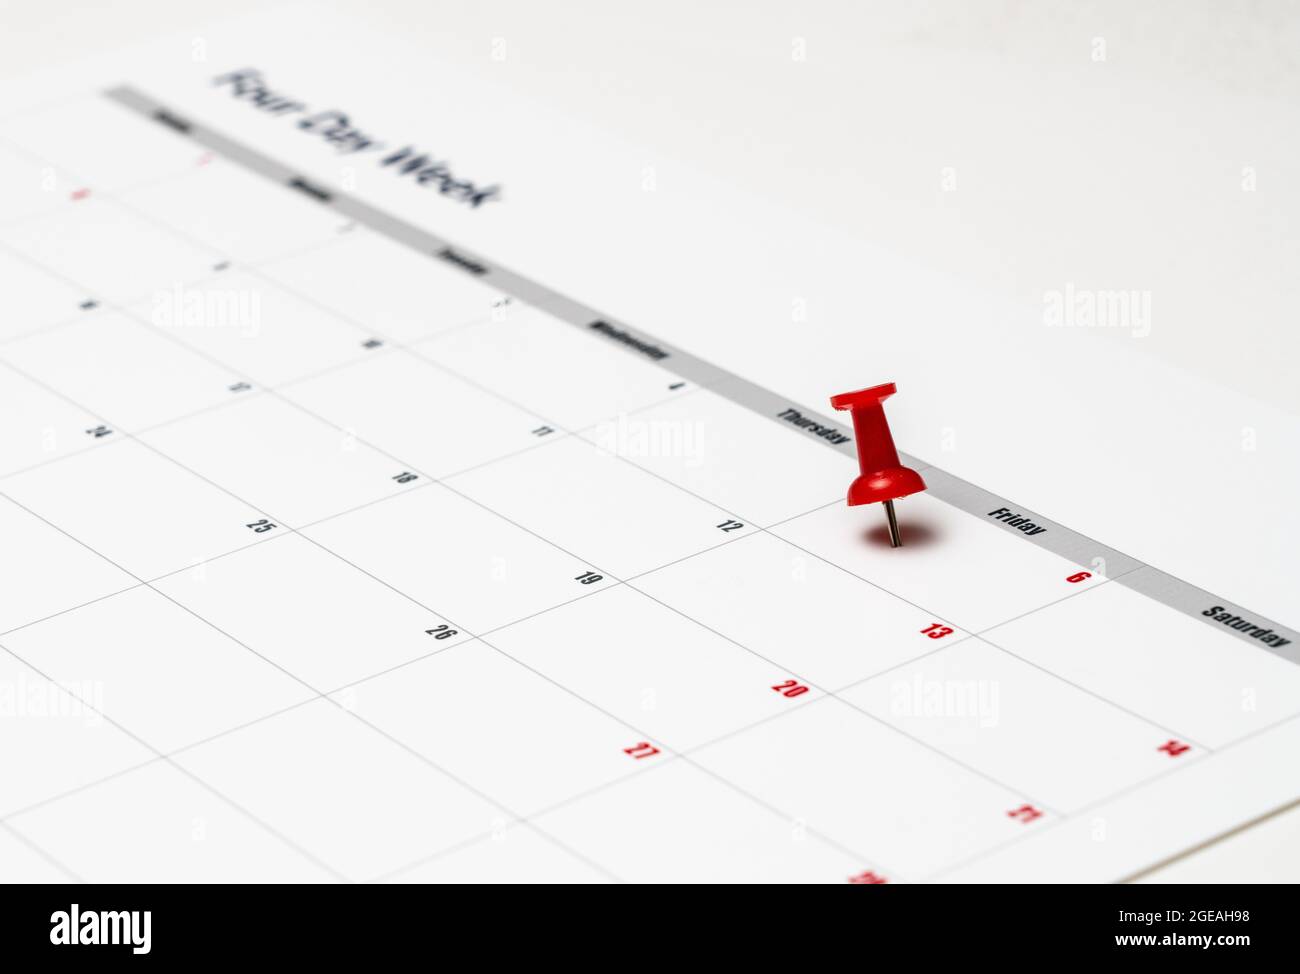 Calendario impreso para una semana laboral de 4 días que muestra los días de fin de semana en rojo en un nuevo enfoque de la productividad Foto de stock